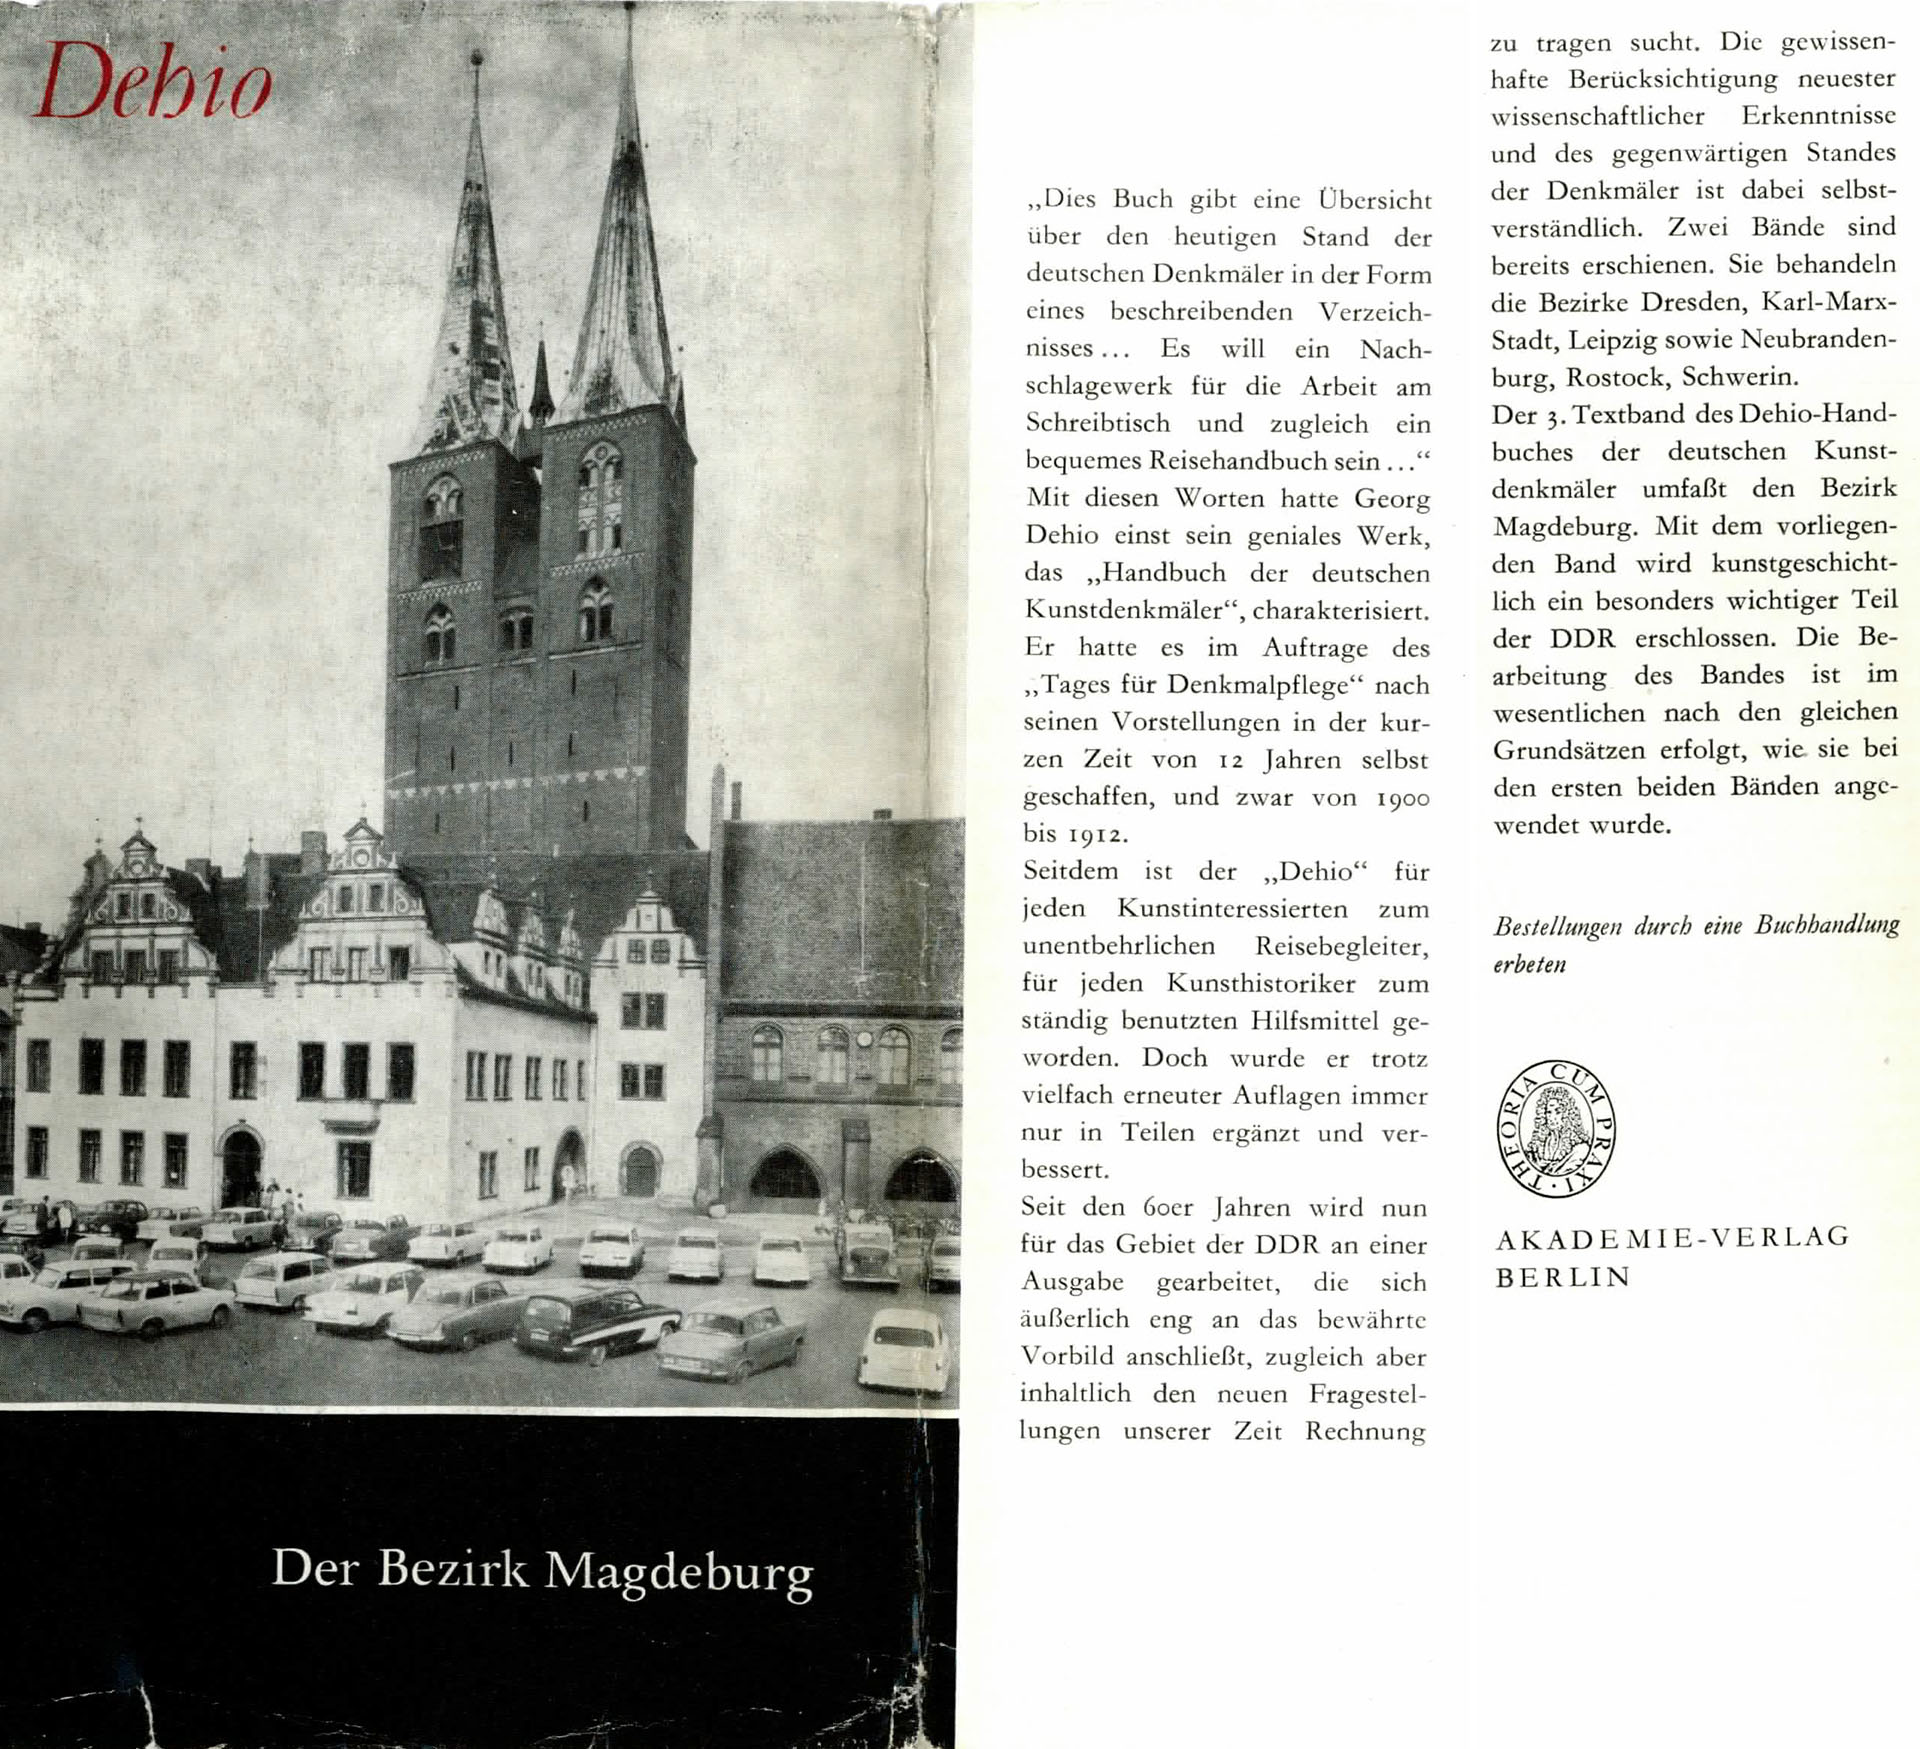 Handbuch der deutschen Kunstdenkmäler (Der Bezirk Magdeburg) - Dehio, Georg